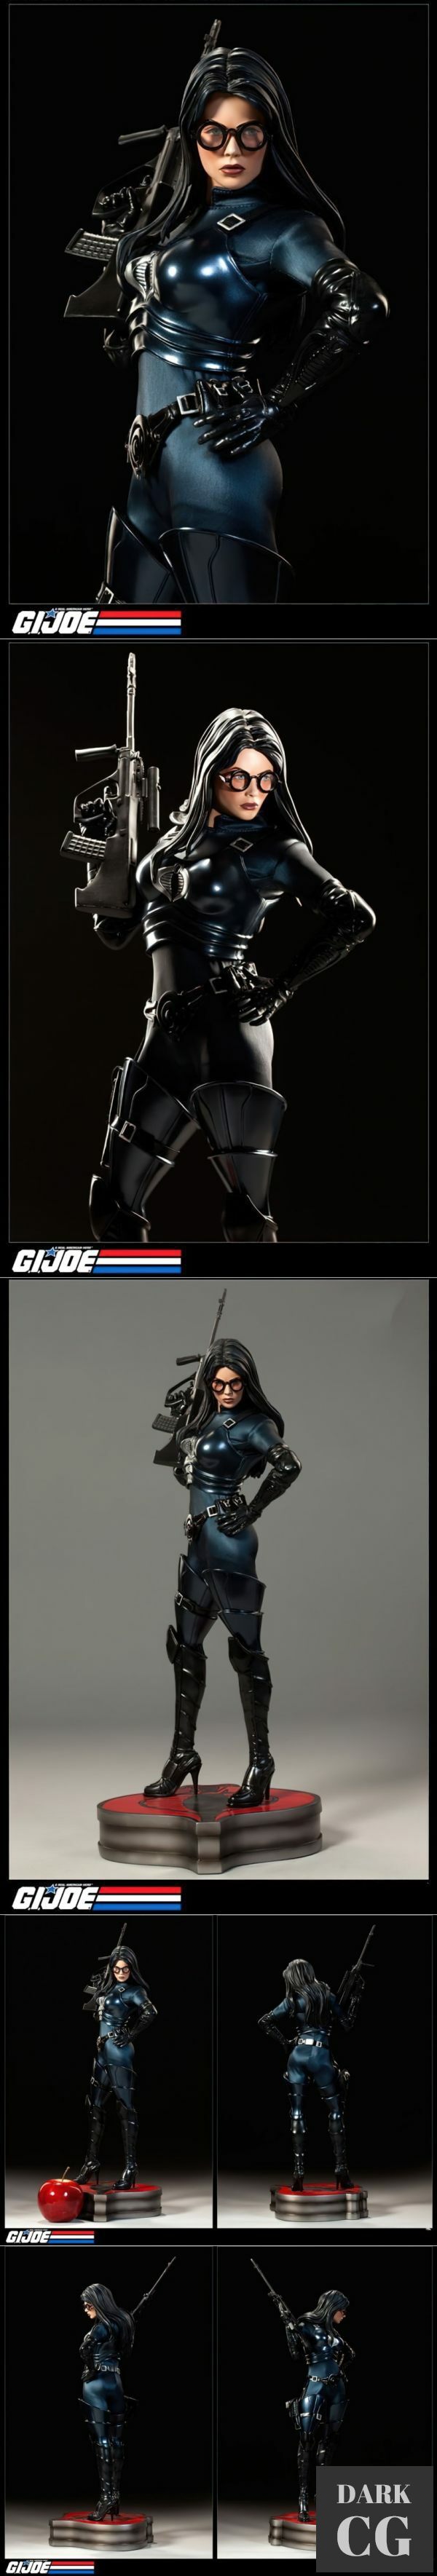 G.I.Joe Baroness